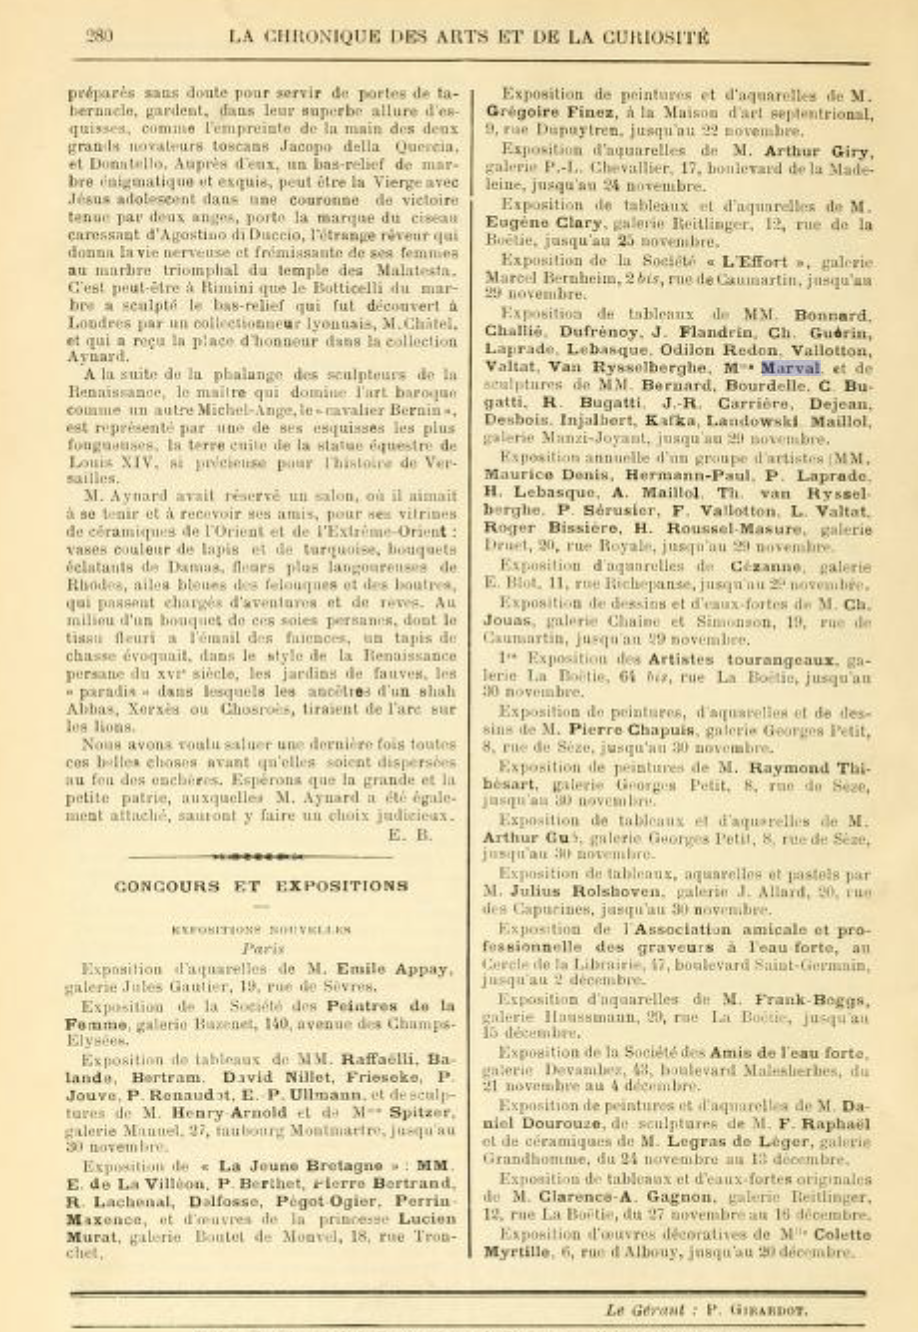 Chronique des Arts et de la Curiosité, Gazette des Beaux-Arts, novembre 1913 (Copy)